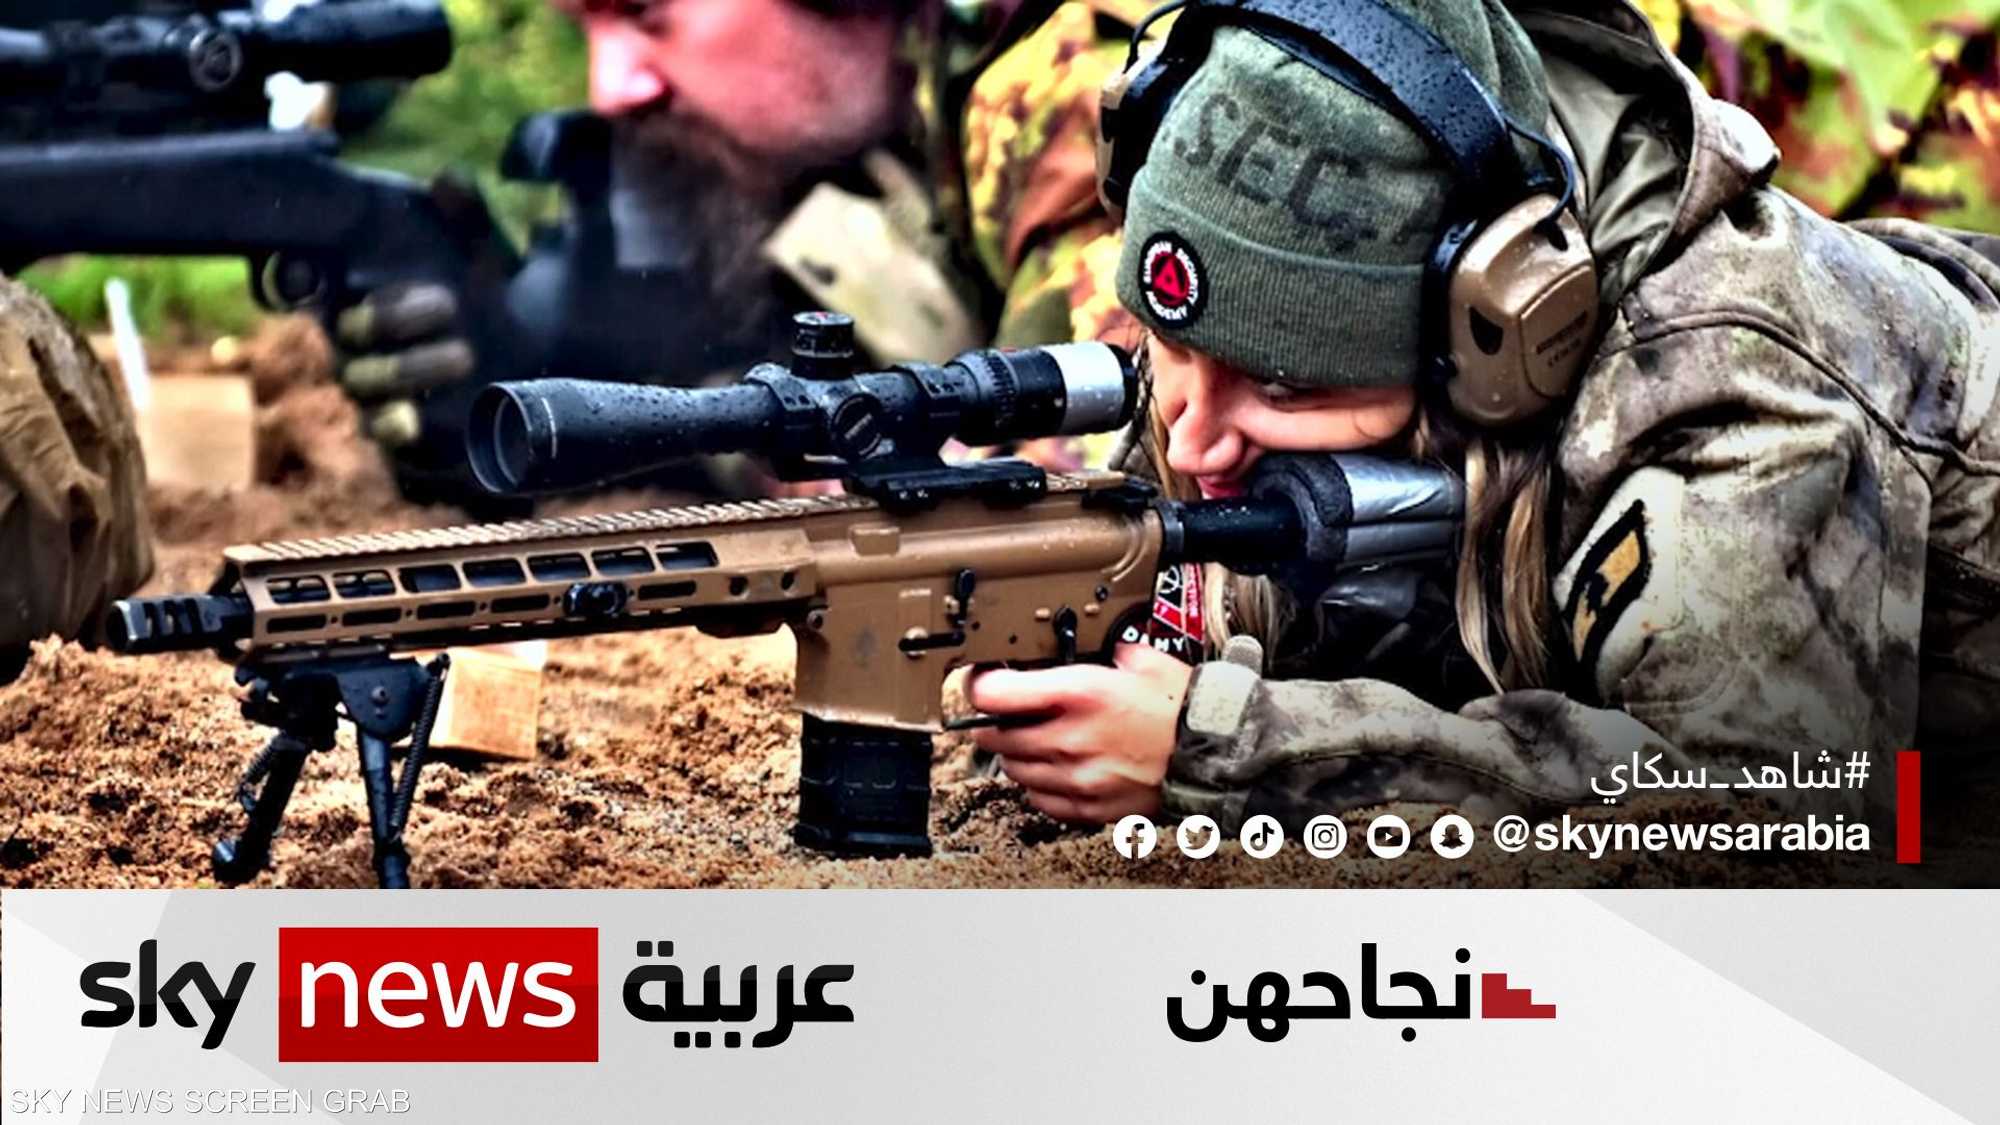 سينتيا يعقوب.. لبنانية تقتحم عالم الأسلحة عبر "الرماية"